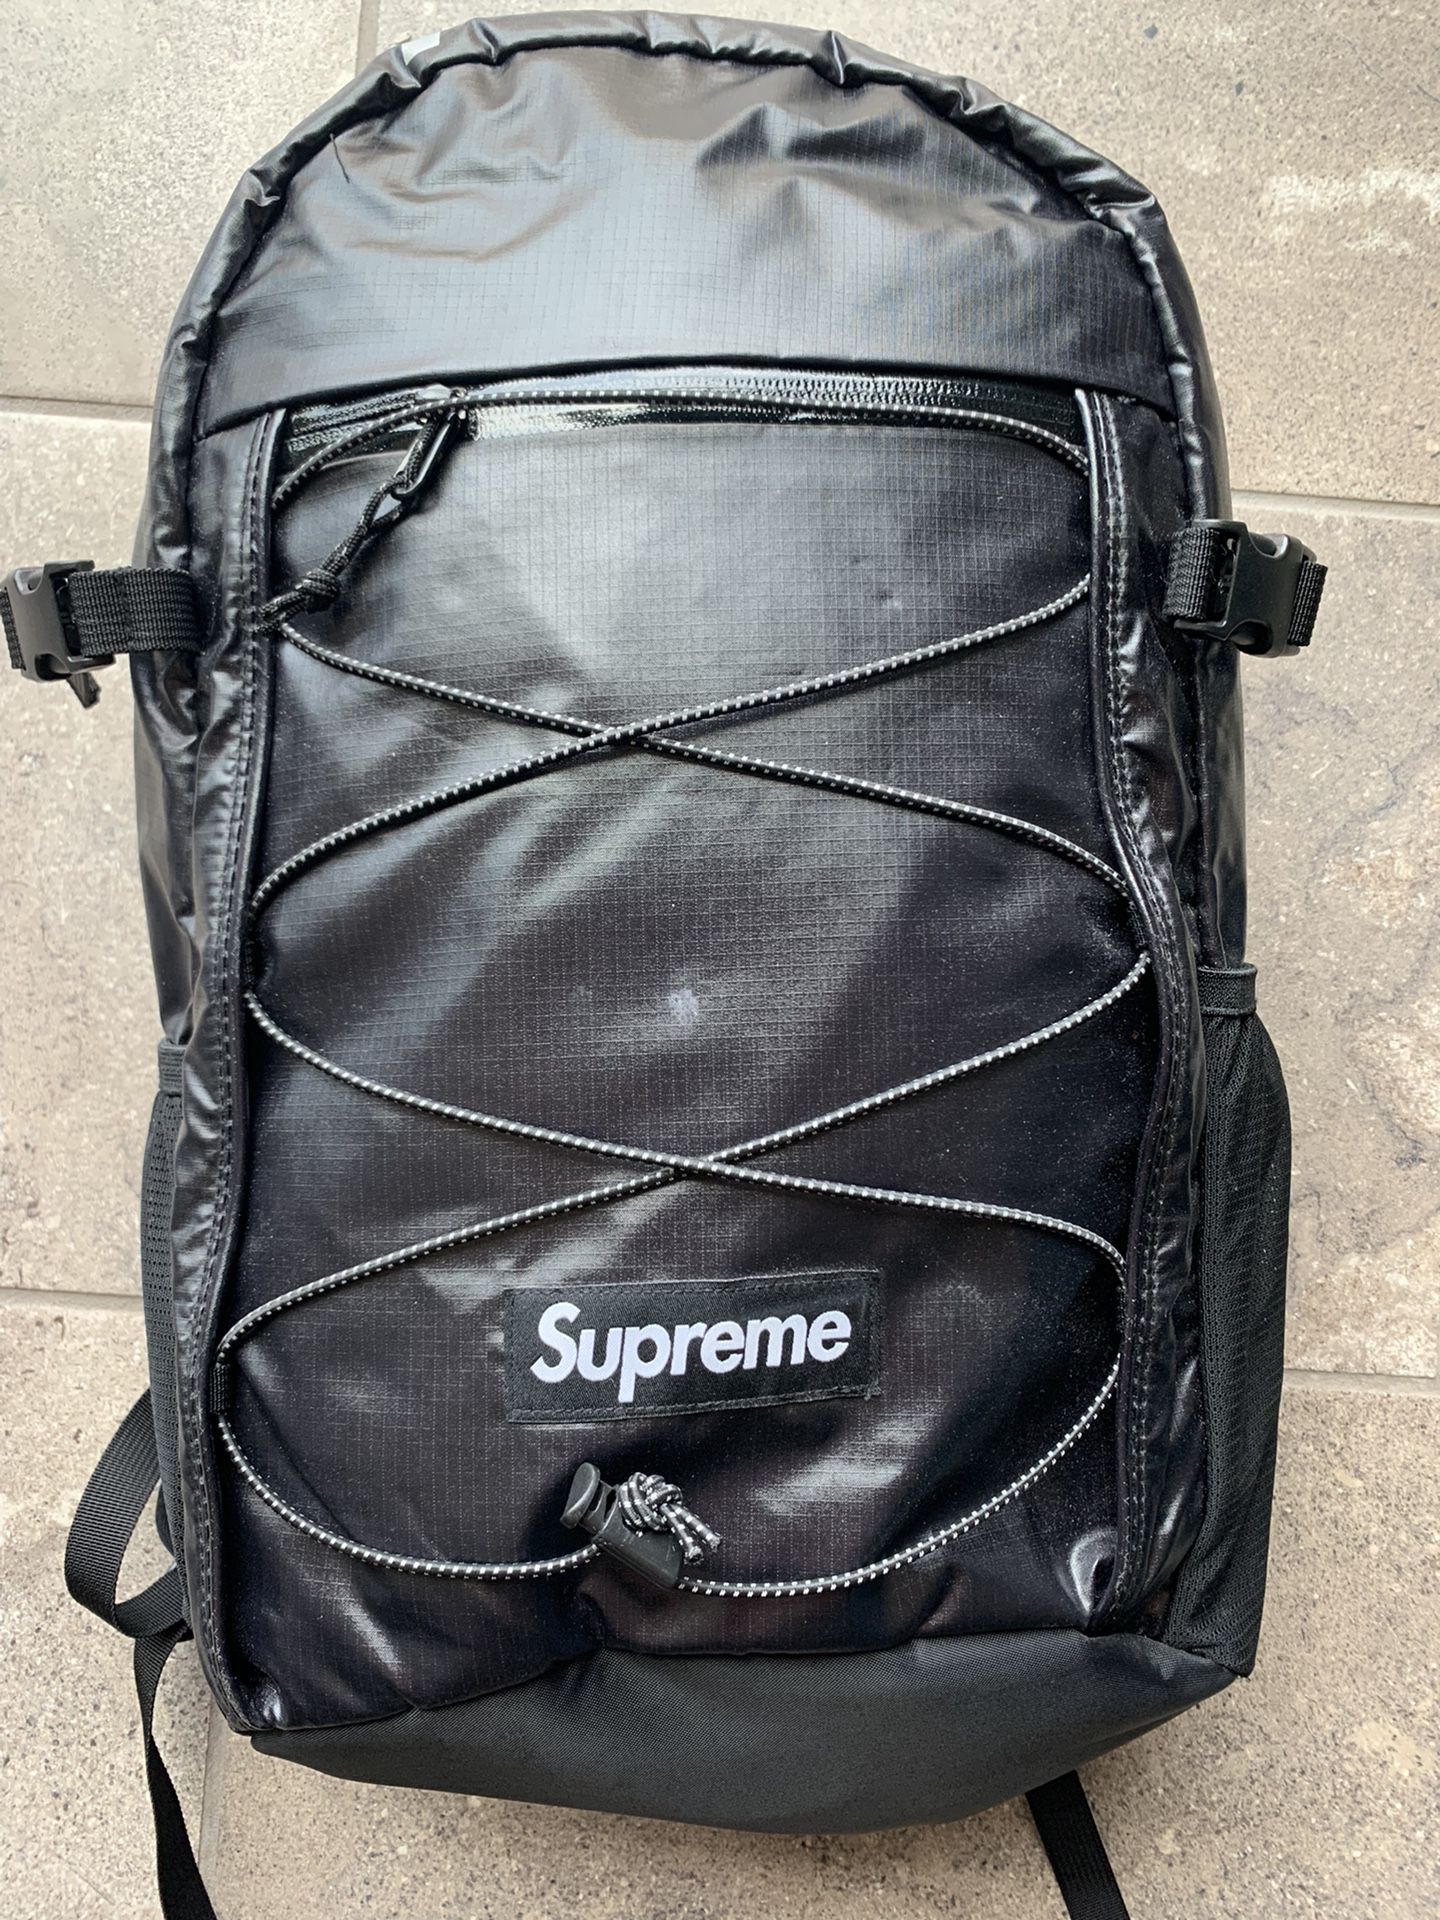 Supreme Black Backpack 